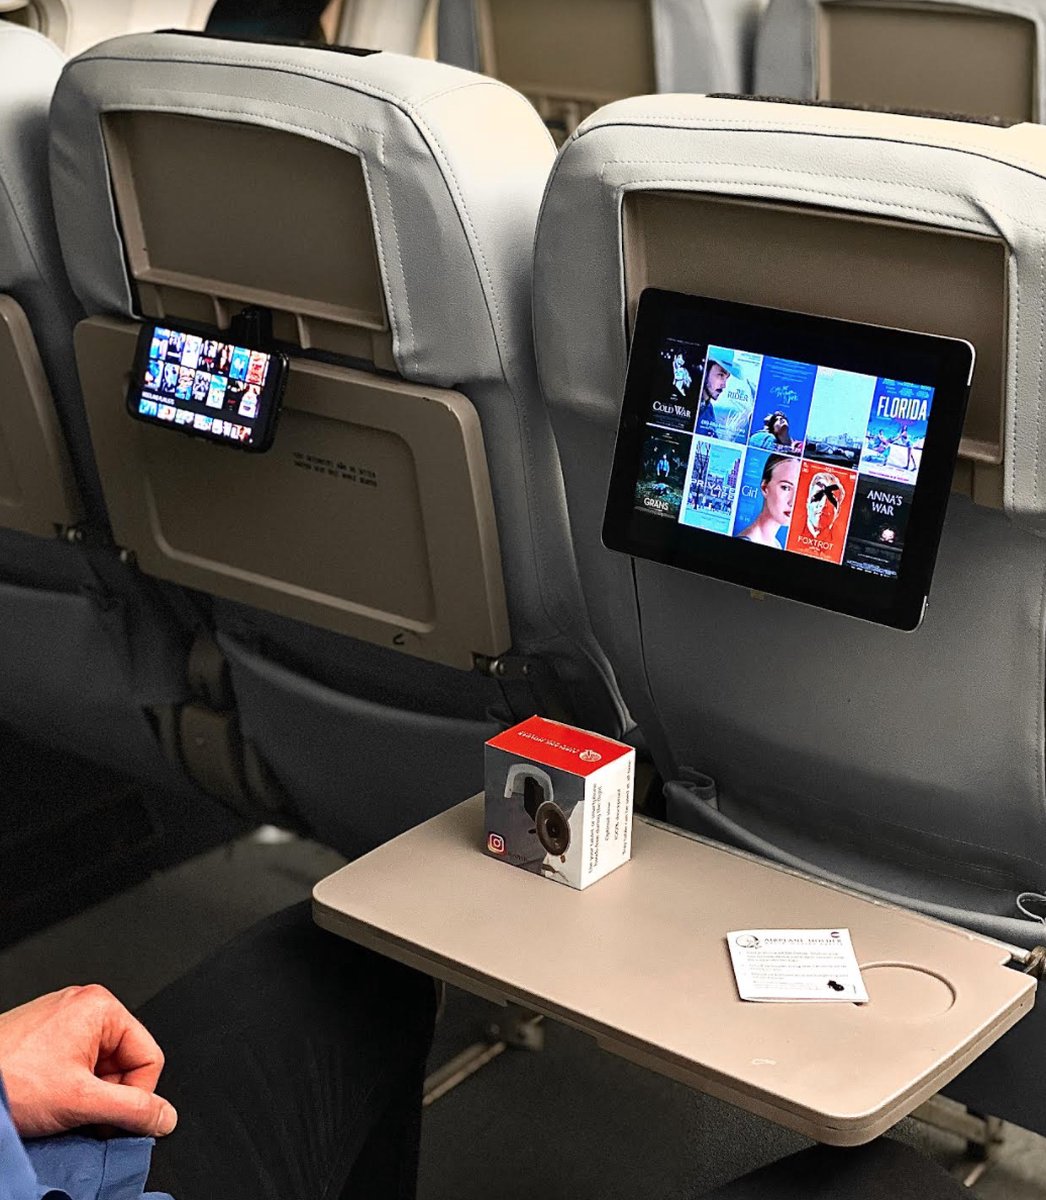 Airplaneholder - Telefoonhouder vliegtuig - Gadgets mannen - Makkelijk Films Kijken Tijdens Jouw Vlucht! - Kobo Apple - cadeau - Smartphone/tablet/Ipad - Beste uit de test!